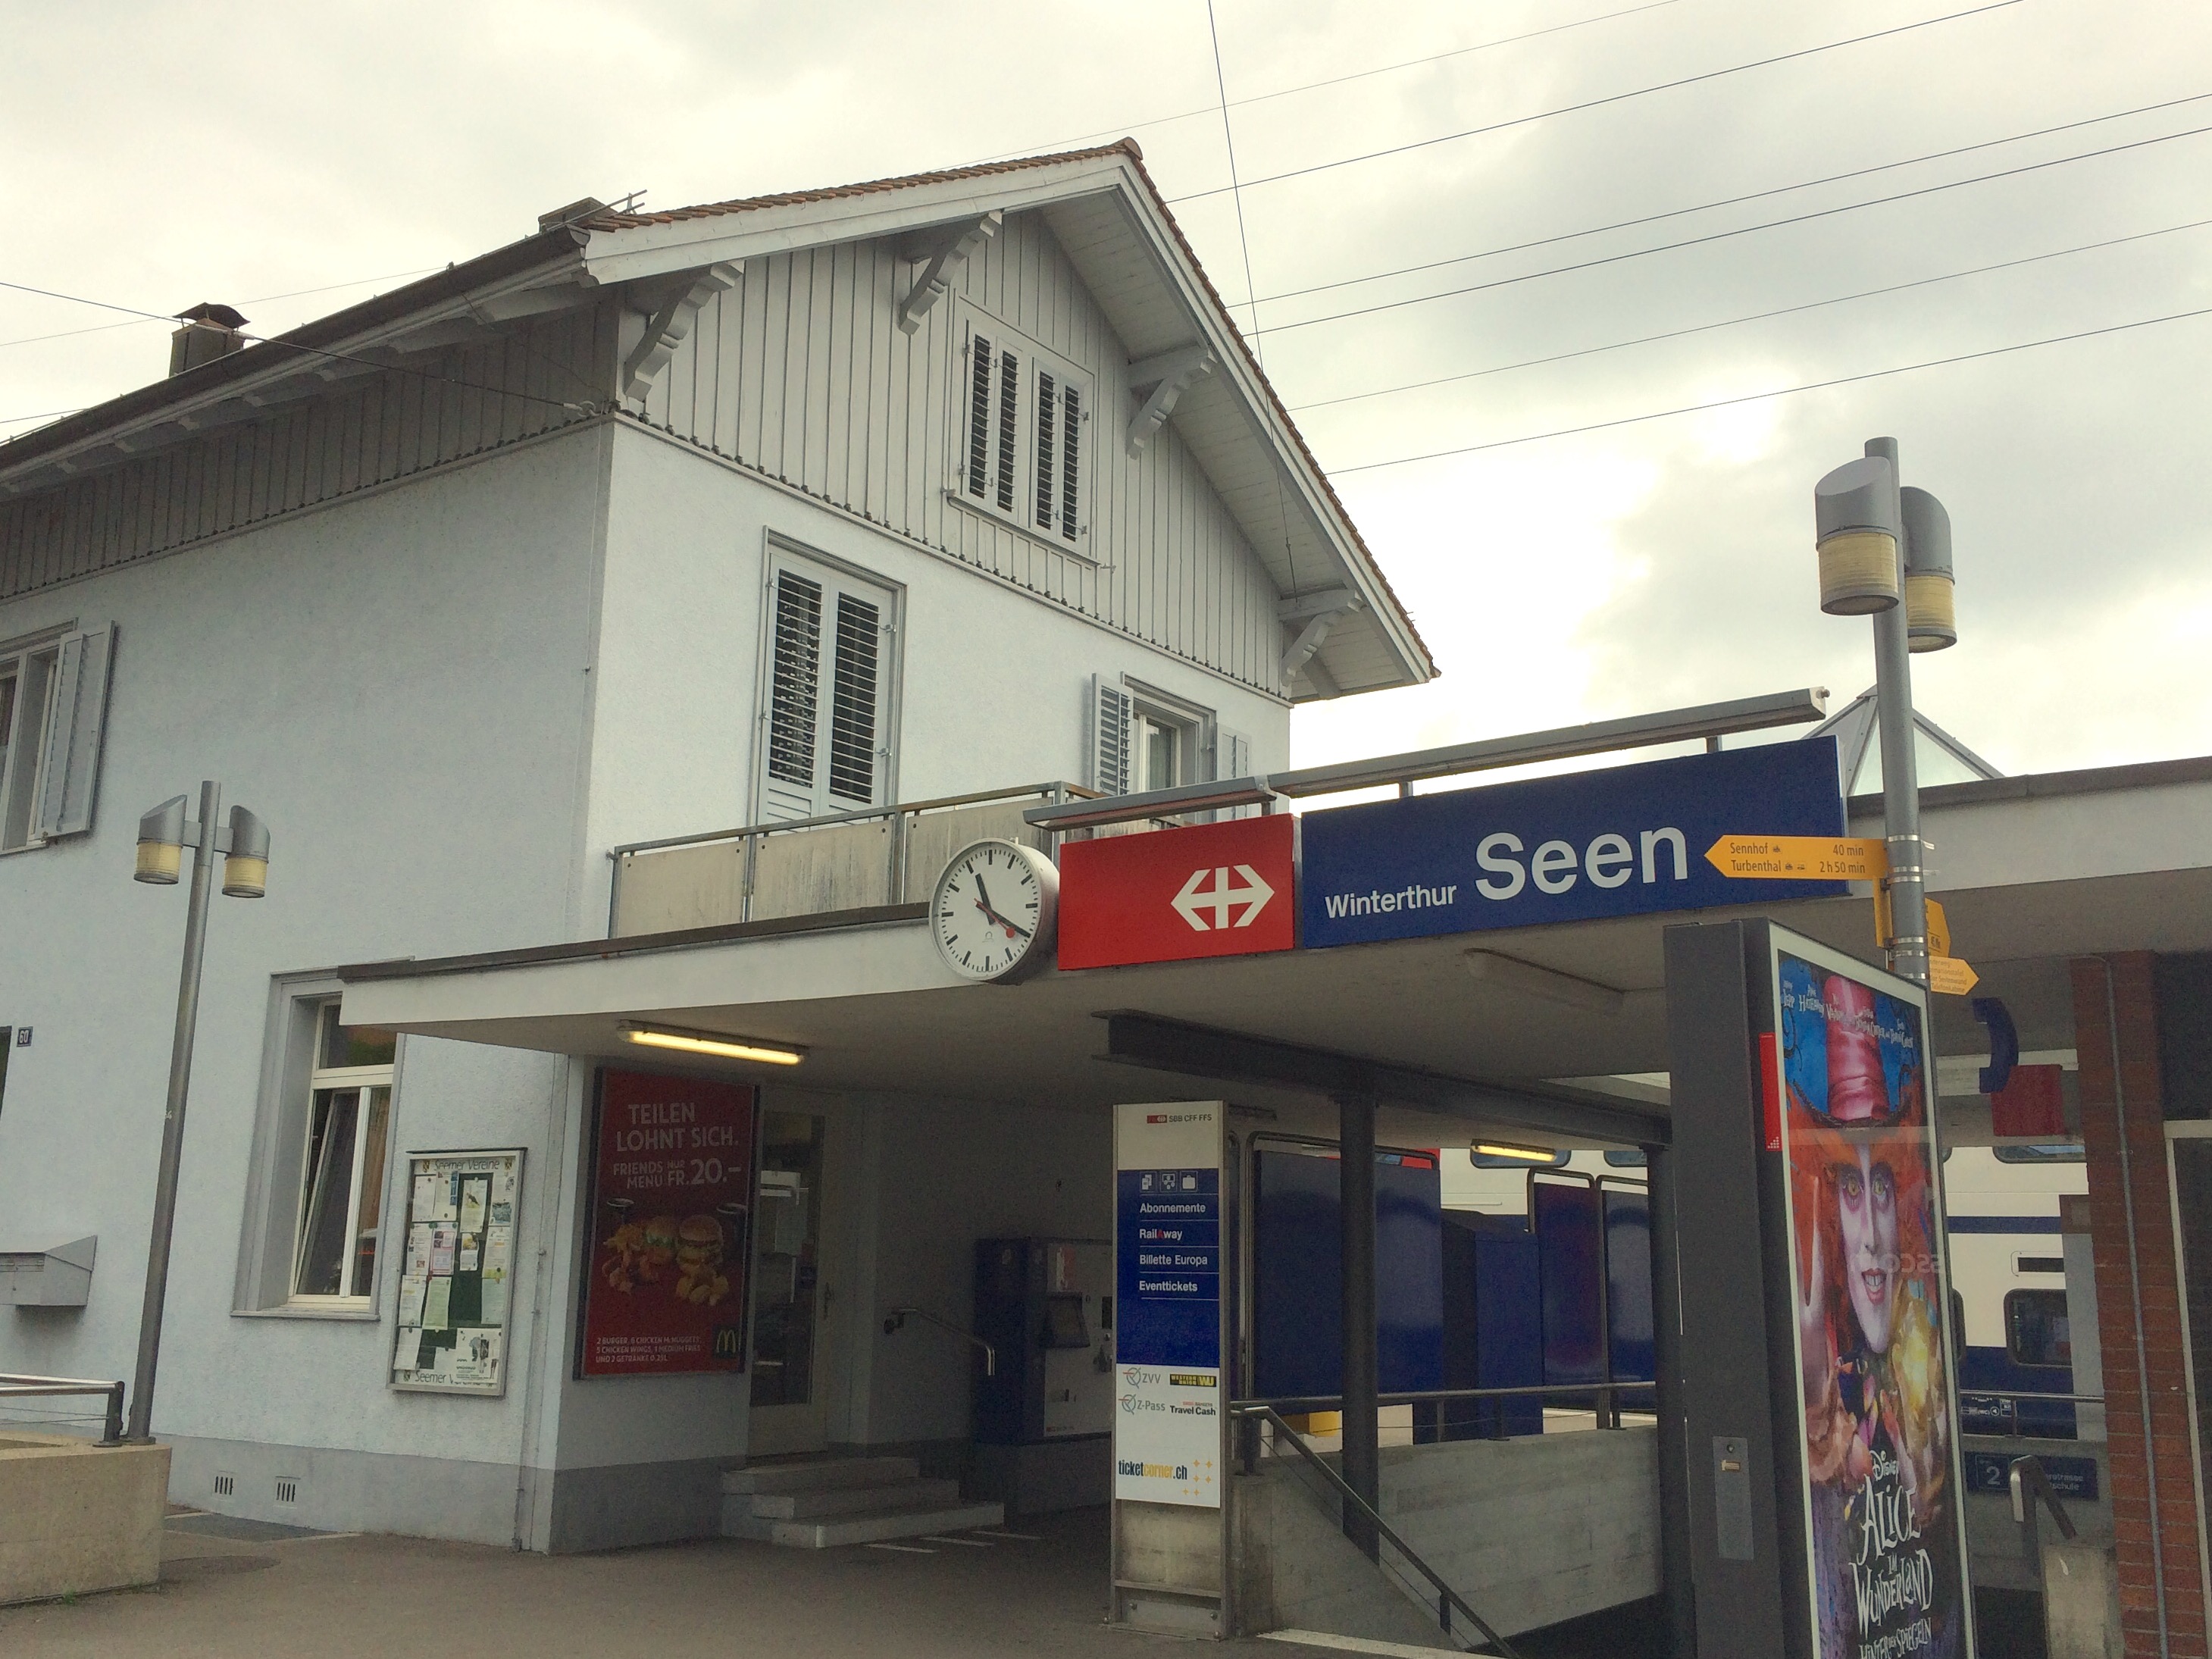 Bahnhof Winterthur-Seen – Wikipedia